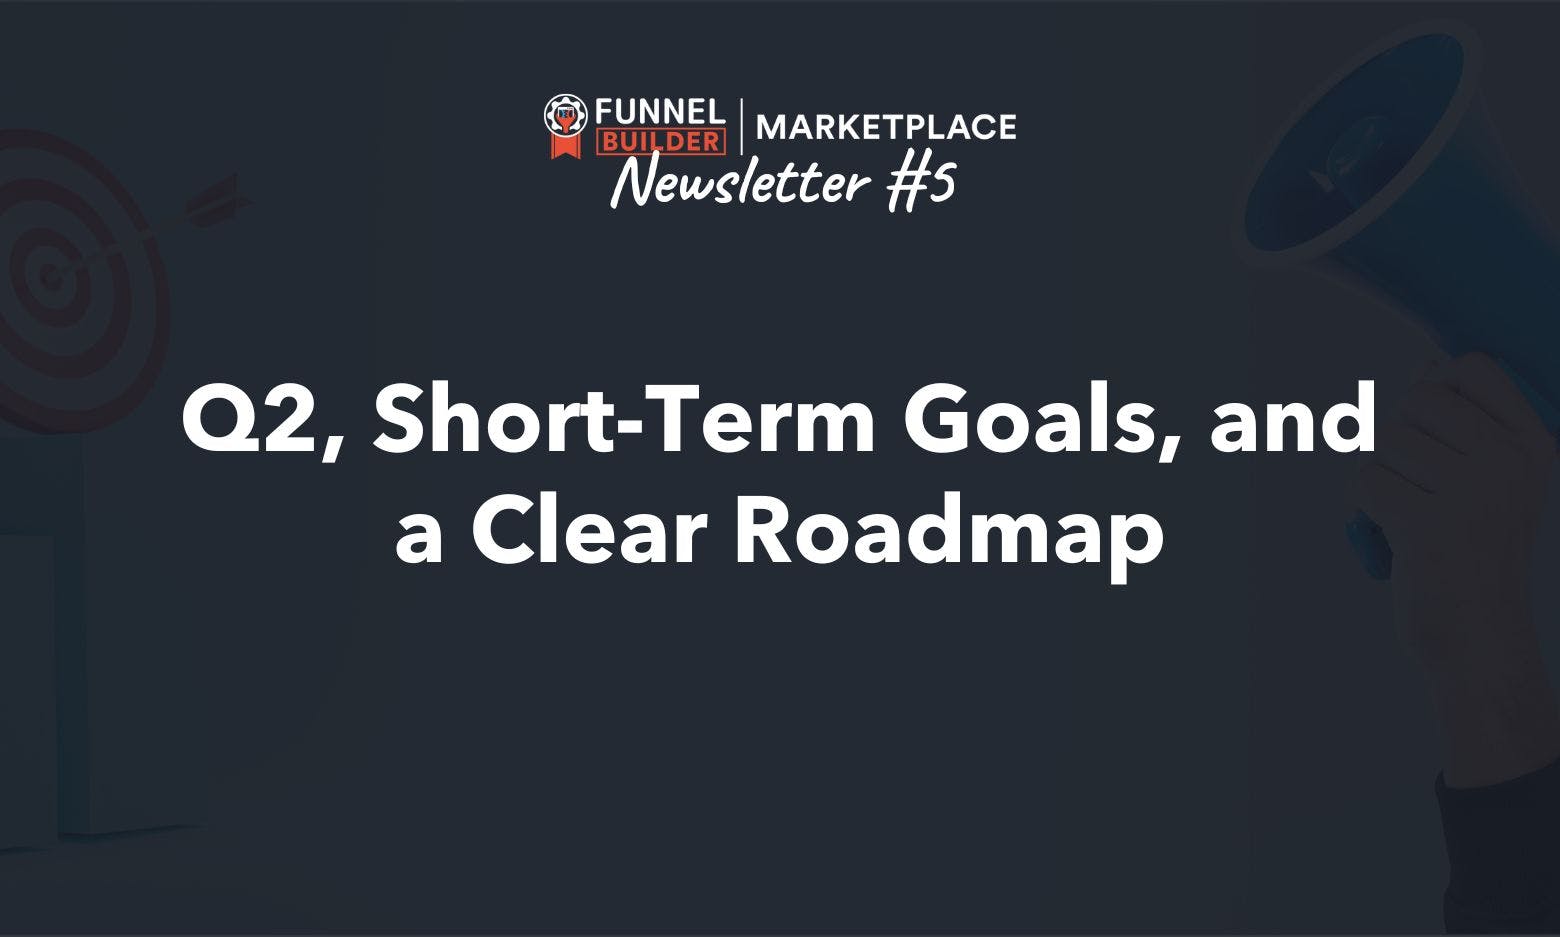 Newsletter #5: Q2, Short-Term Goals, and a Clear Roadmap